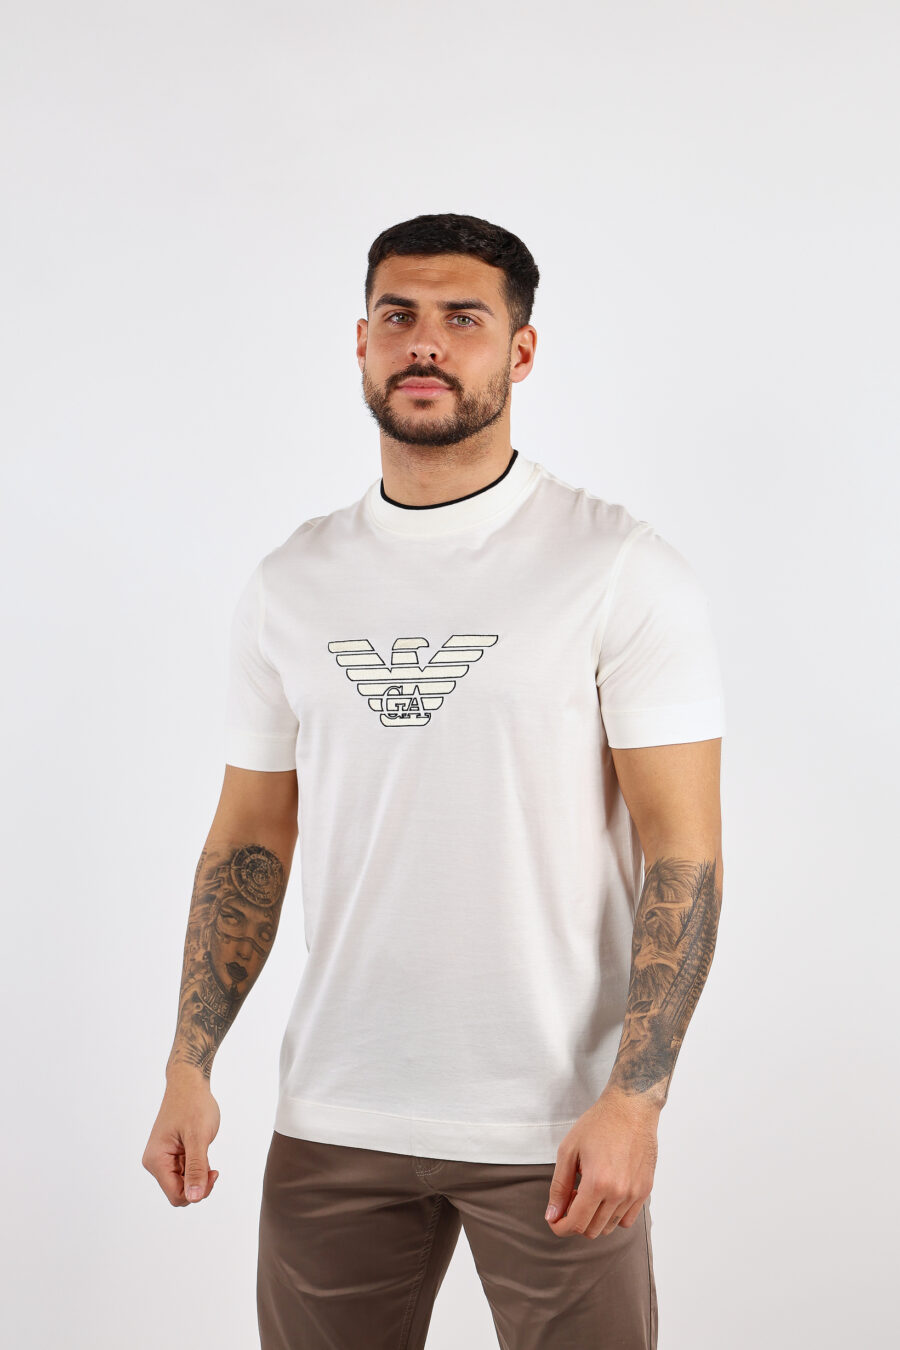 Cremefarbenes T-Shirt mit zentriertem Adler-Logo - BLS Fashion 75